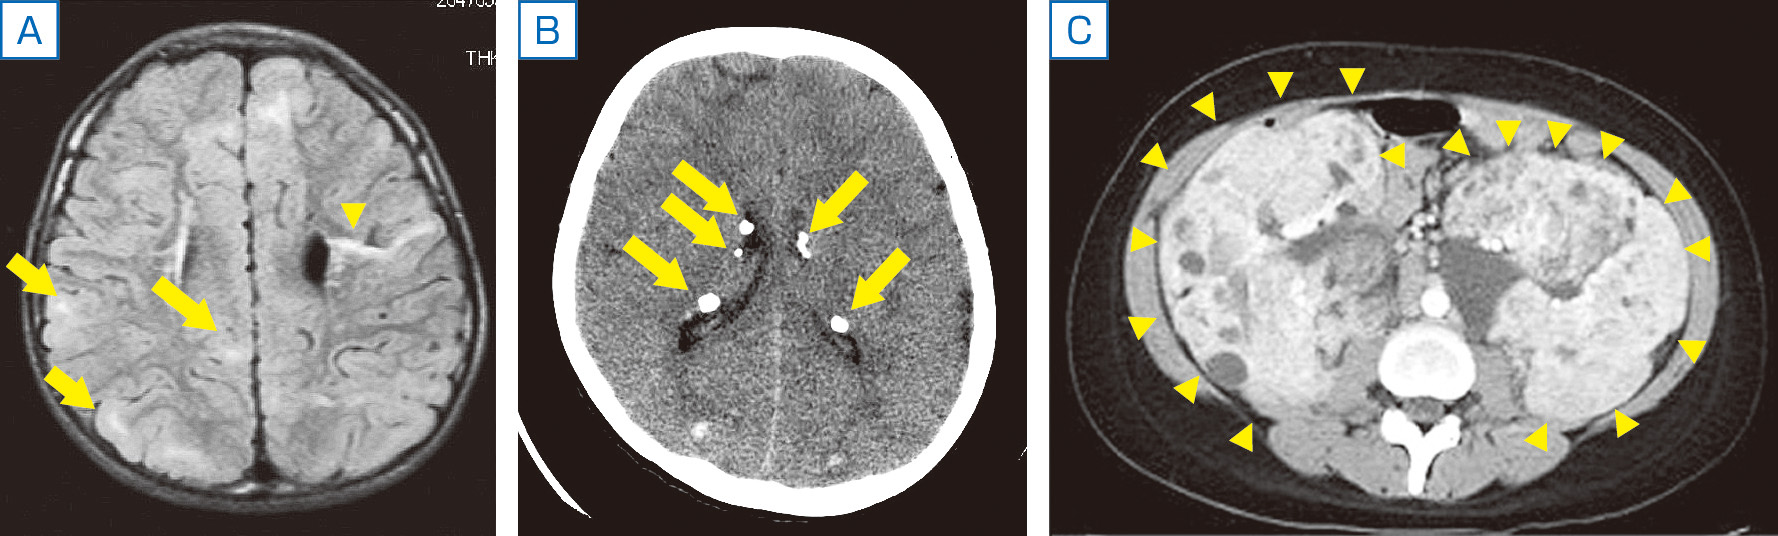 ⓔ図18-13-8　結節性硬化症 A：皮質結節 (矢印) とradial migration line (矢頭)，B：上衣下結節 (石灰化を伴う)，頭部MRI，FLAIR画像，水平断，C：腎血管脂肪腫 (両側性)，頭部MRI，T2強調画像，水平断．